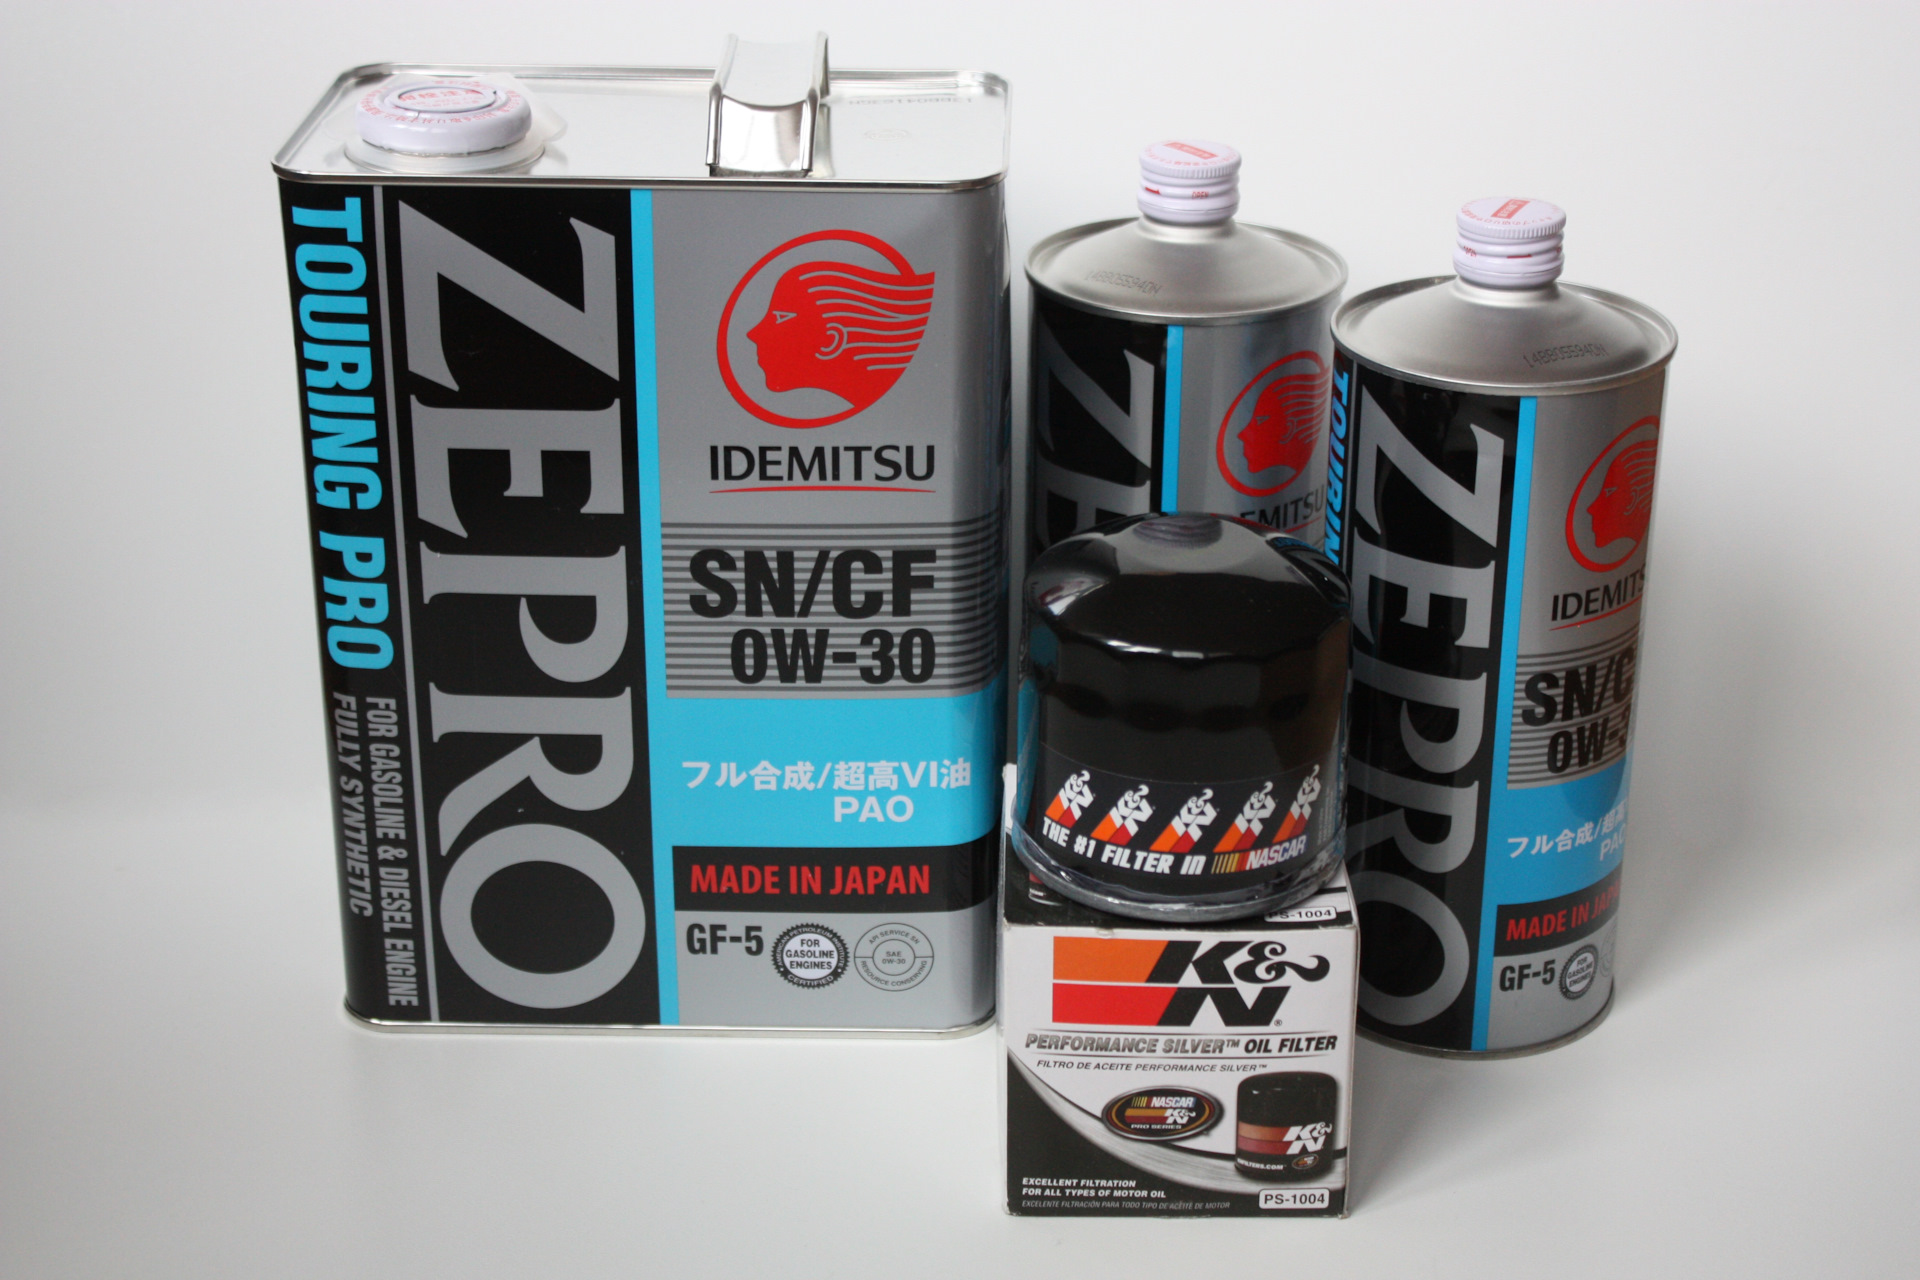 Idemitsu Zepro Touring Pro 0w-30